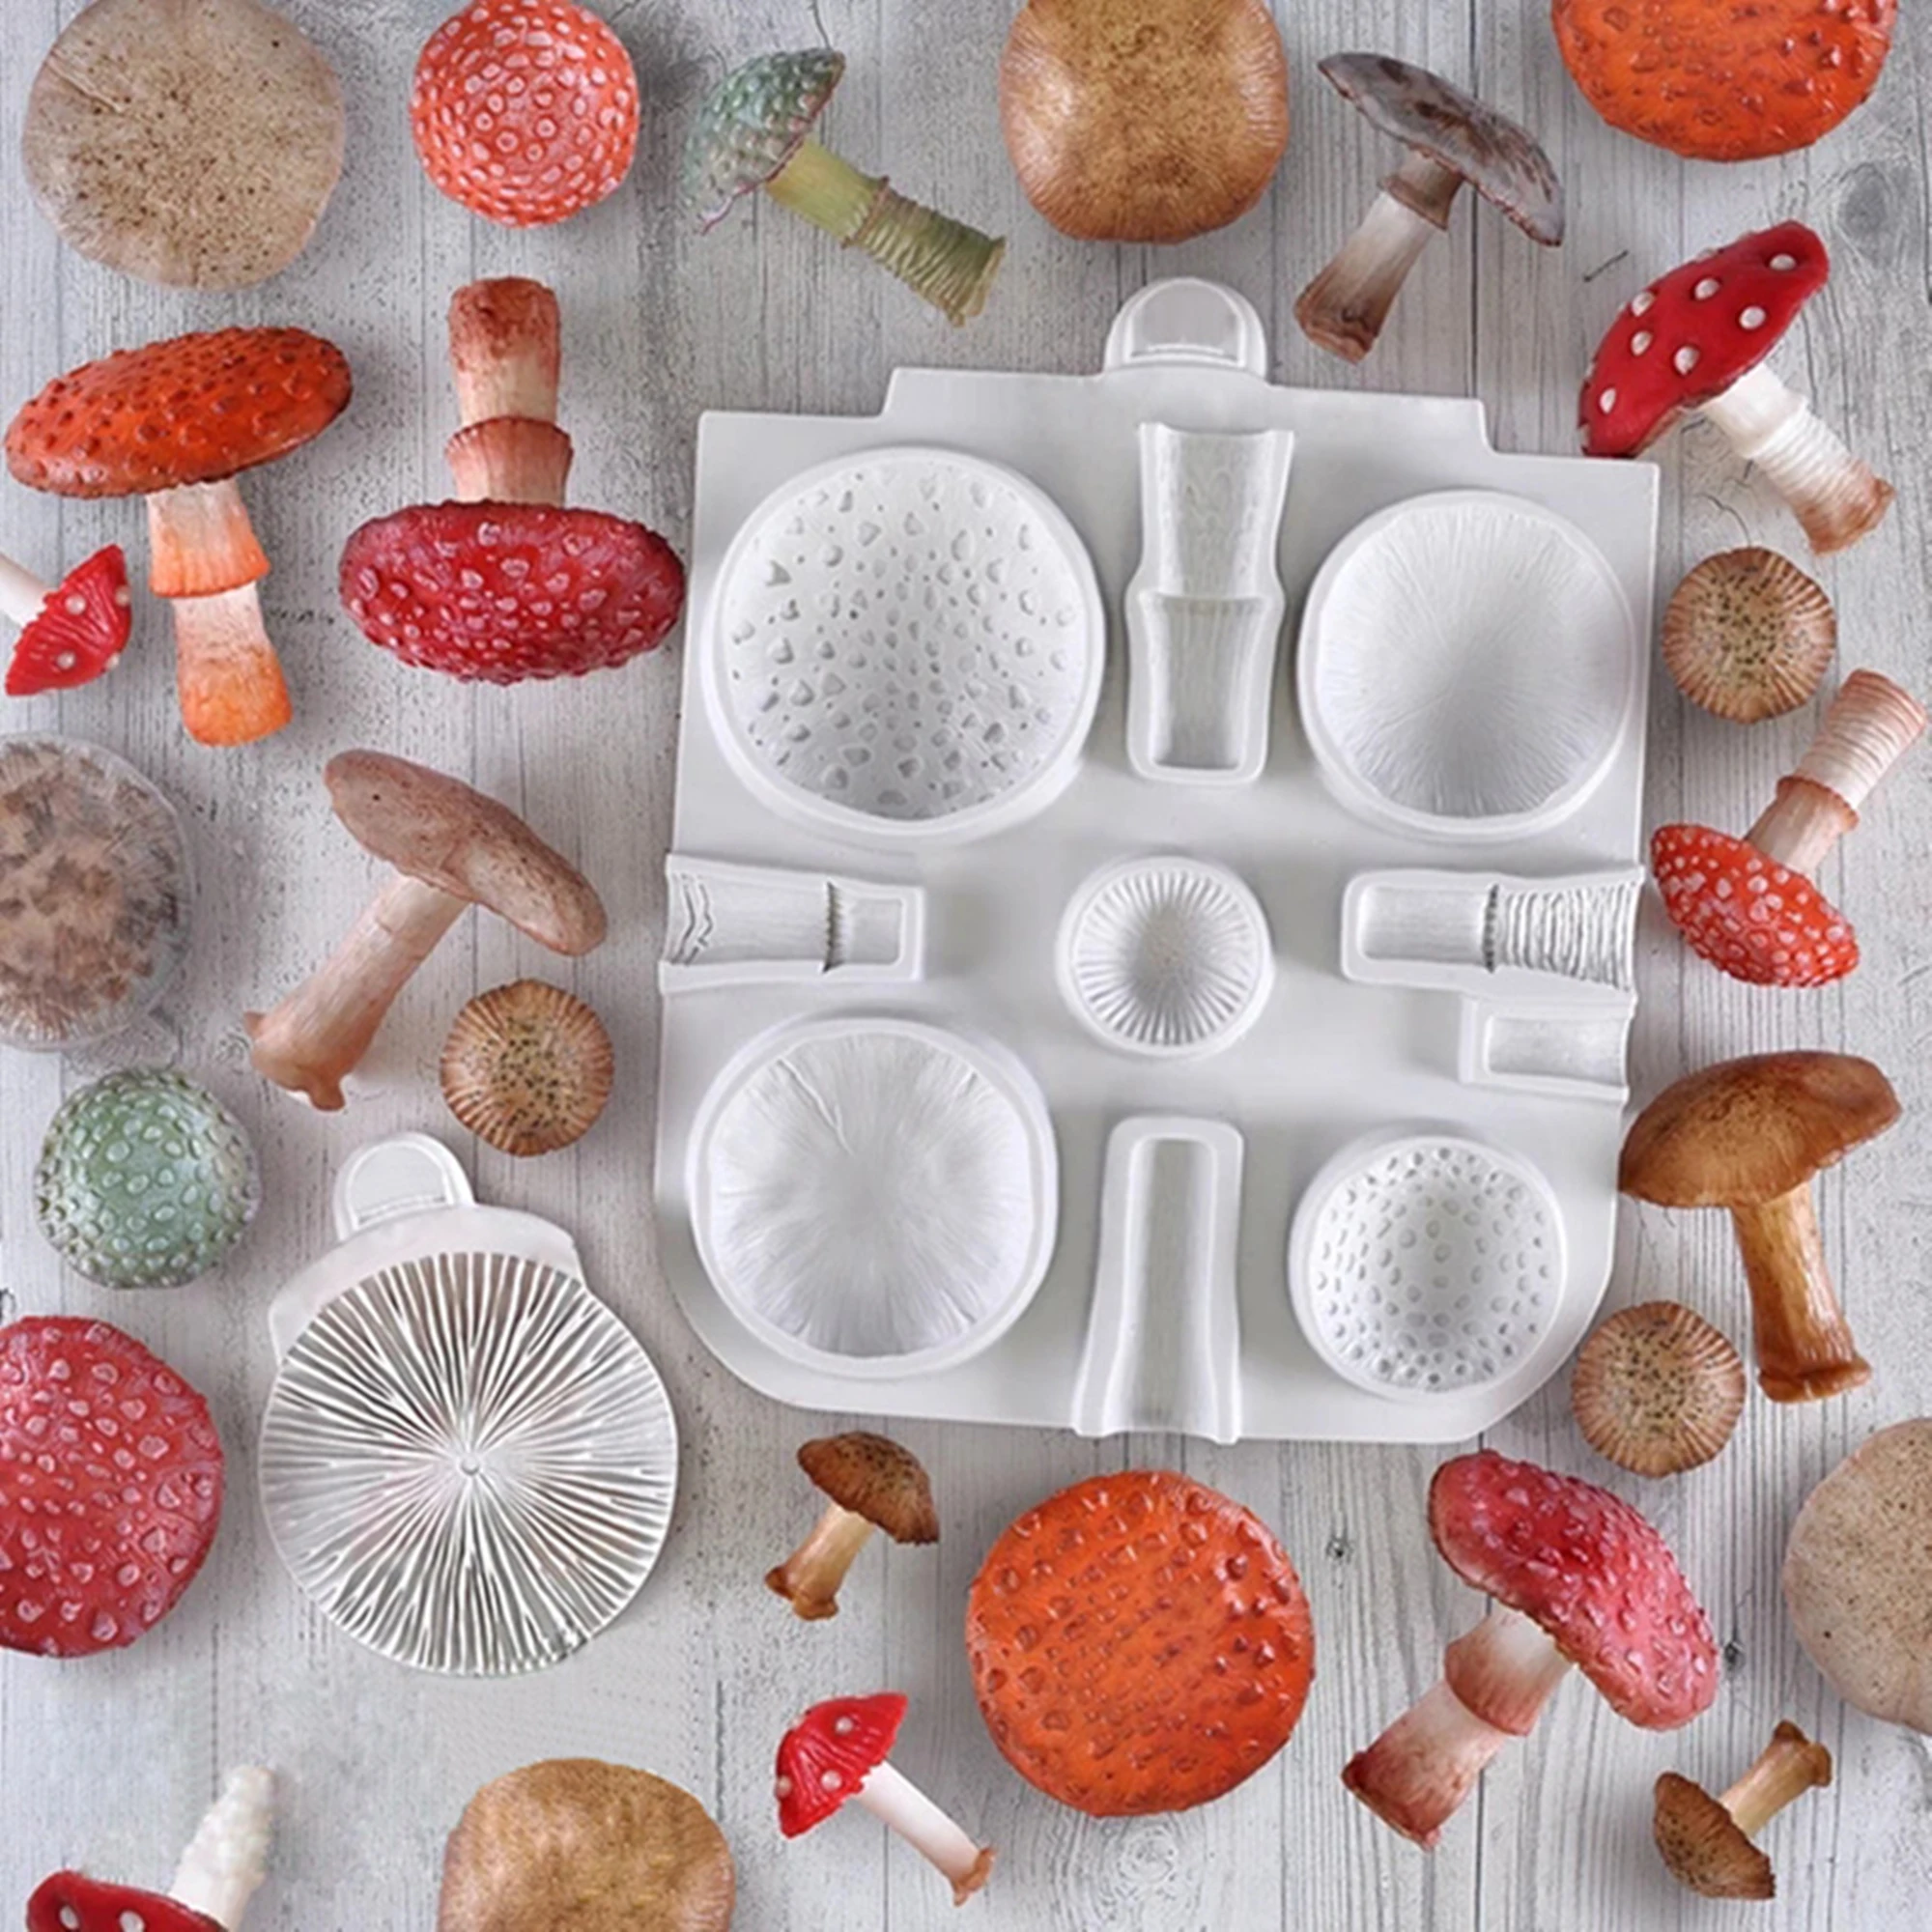 DIY Mushroom Silicone Fondant Molds Wedding Cake Decorating Tools, Cake Molds For Baking Chocolate Resin Molds